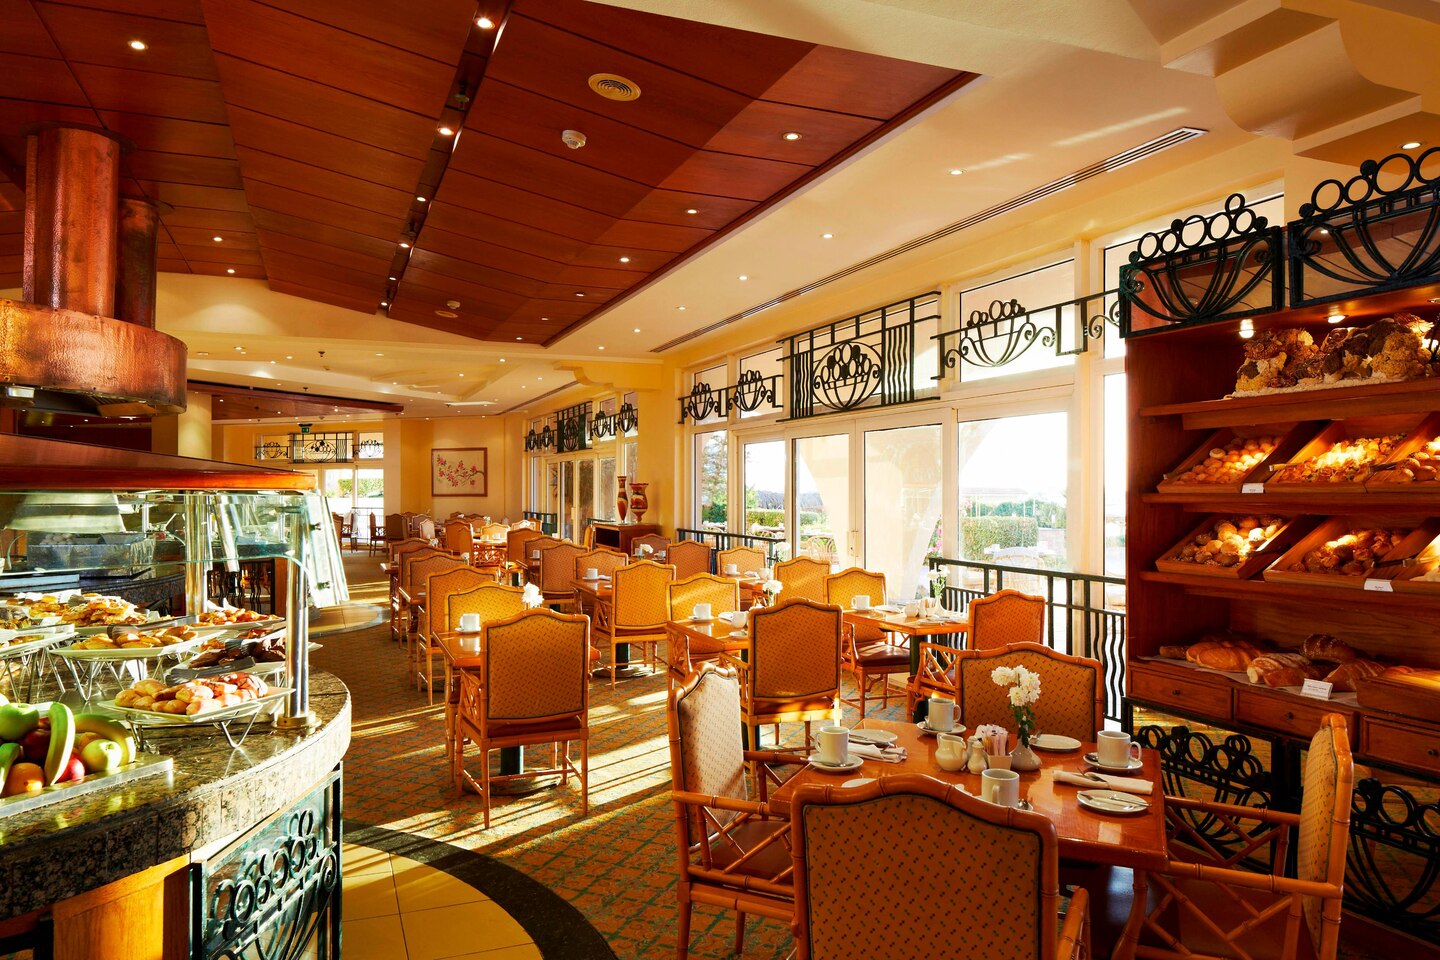 Hotel Hurghada Marriott Beach Resort